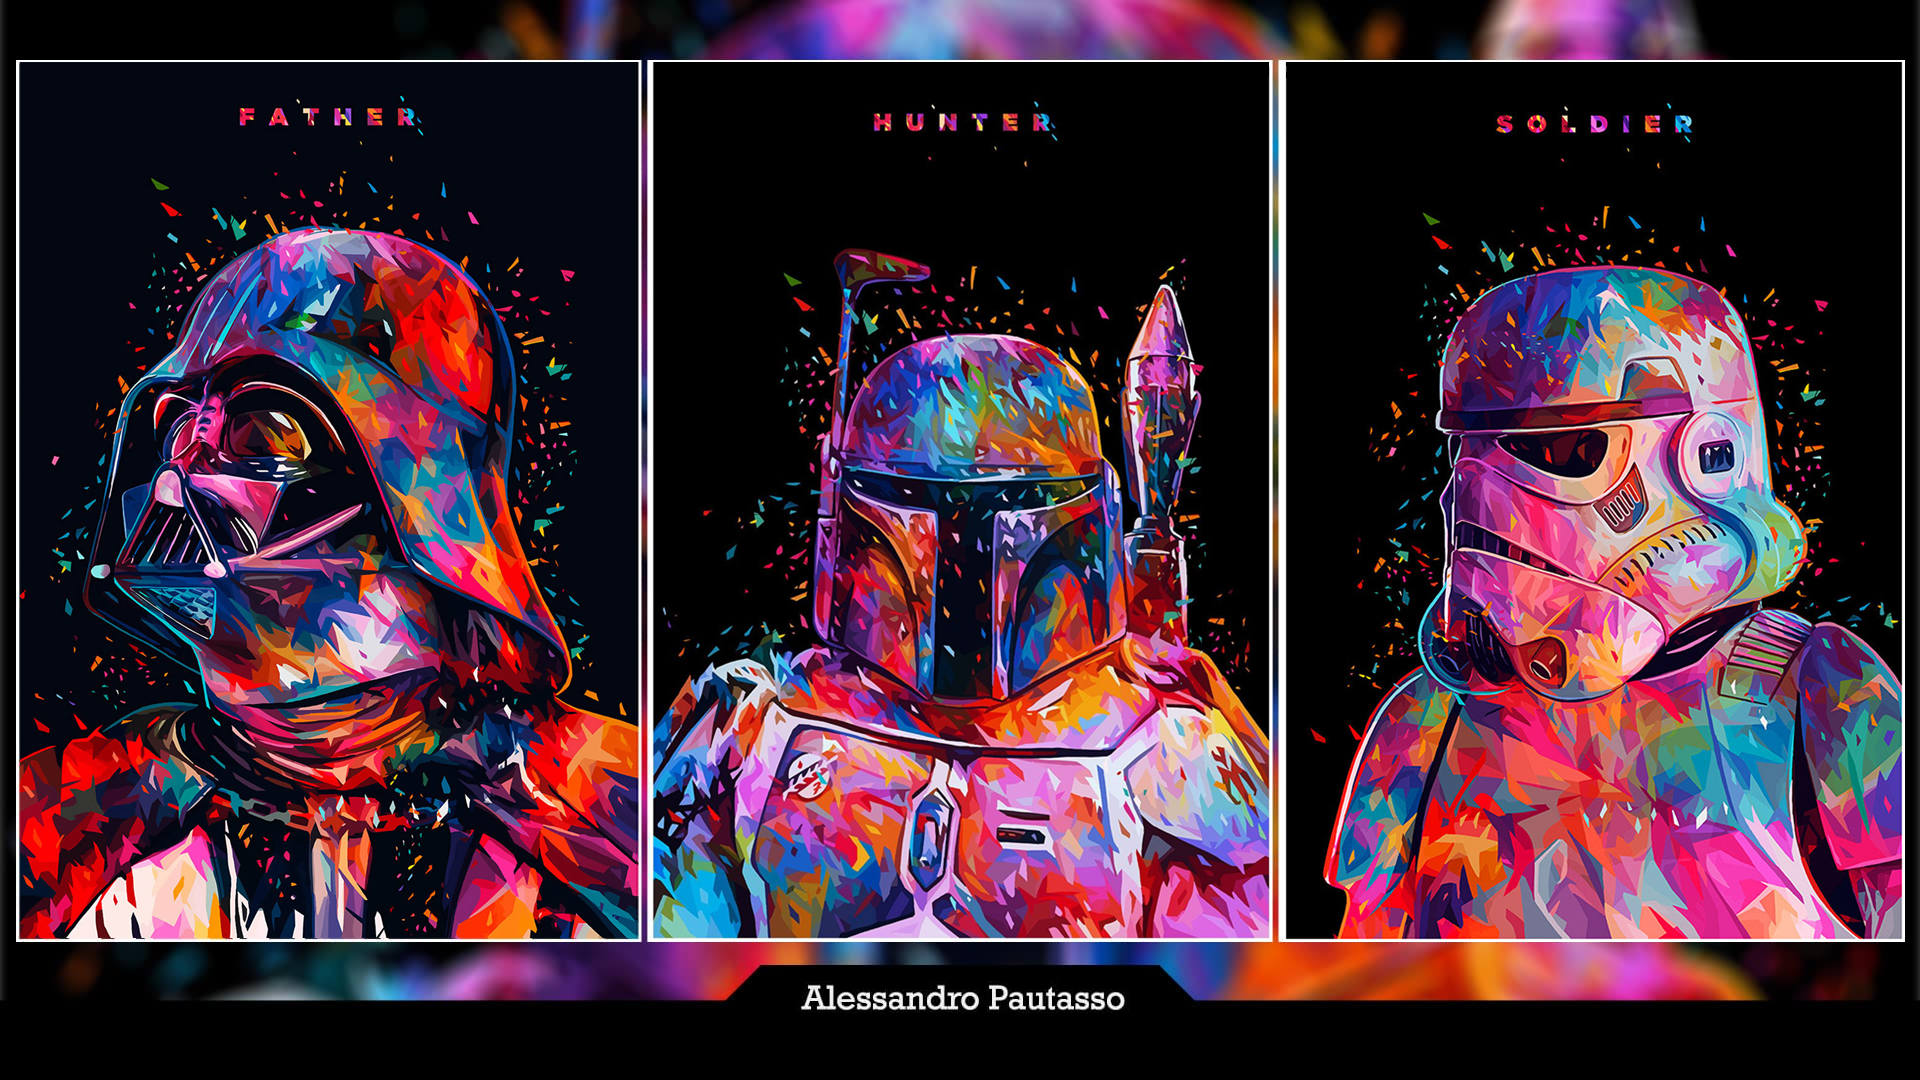 General 1920x1080 Star Wars fan art artwork digital art Boba Fett Darth Vader stormtrooper panels Alessandro Pautasso shards colorful portrait